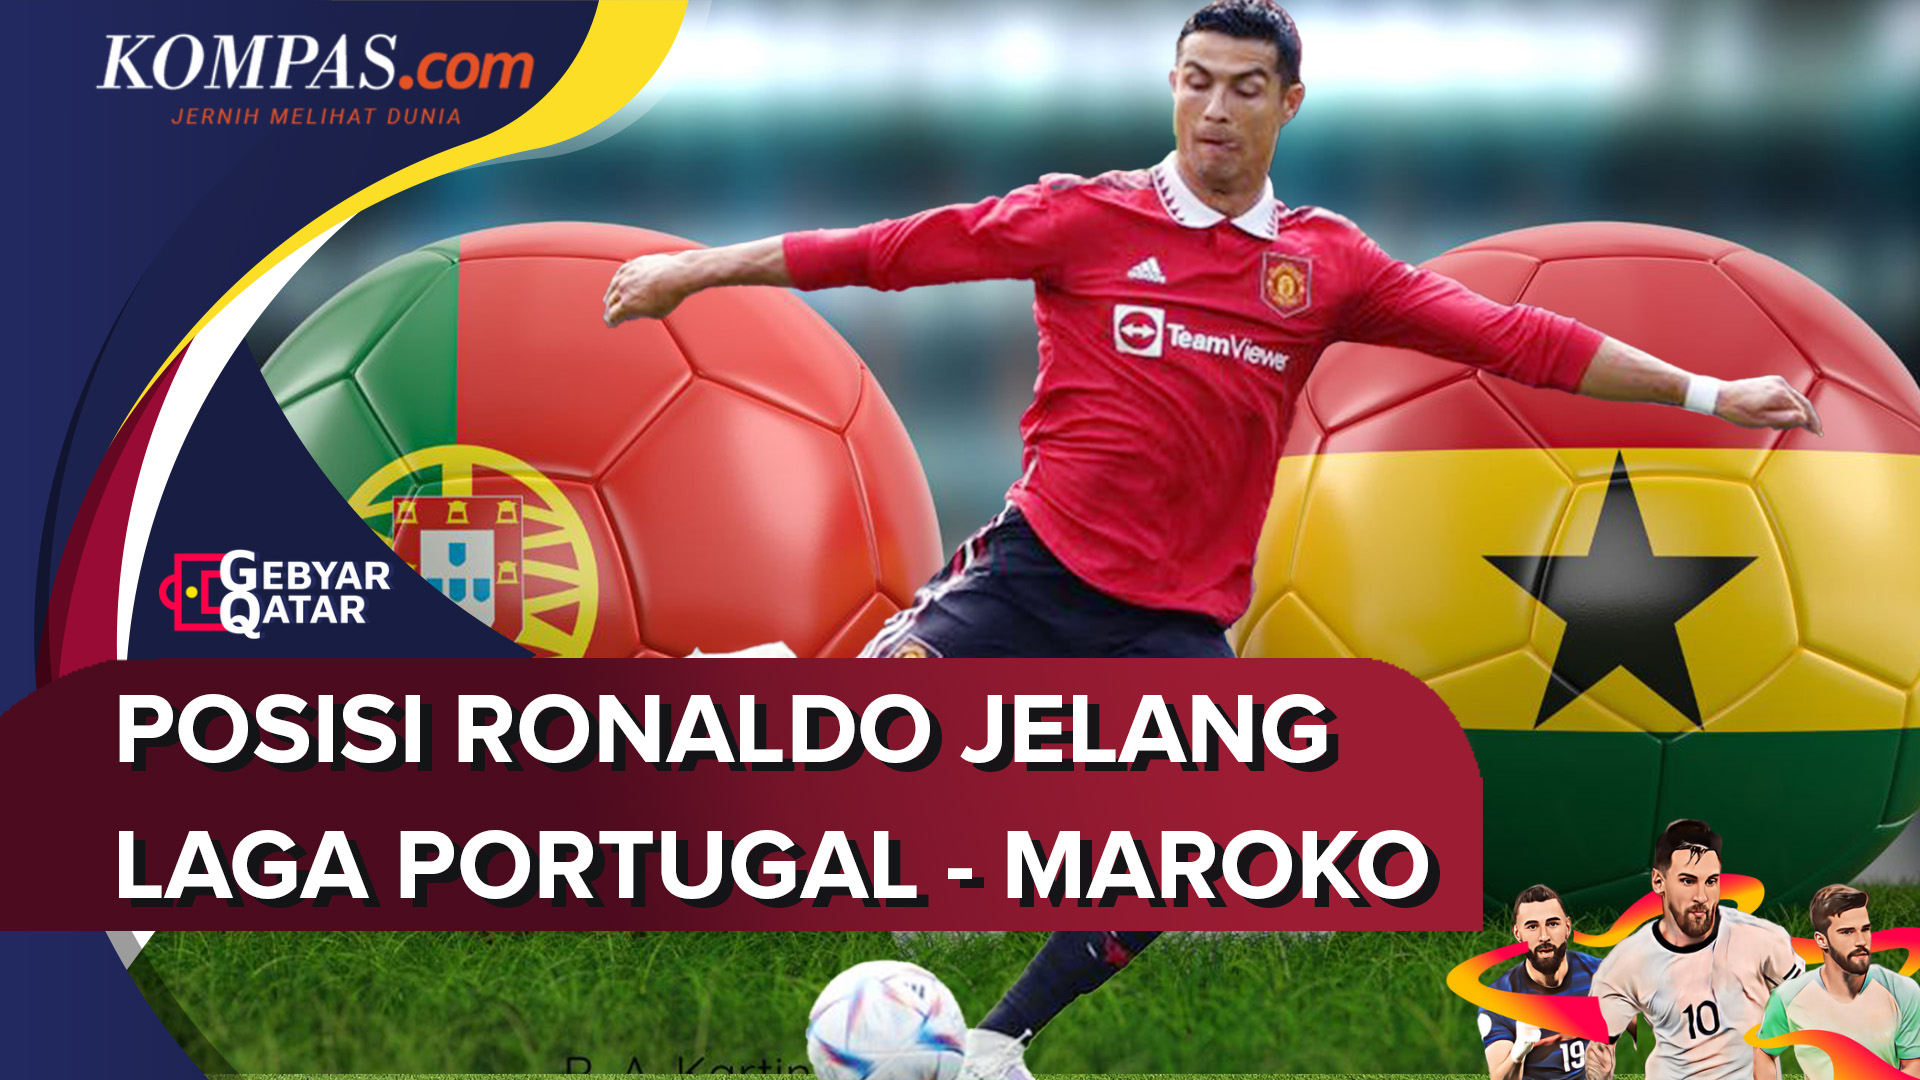 Posisi Ronaldo Jelang Laga Portugal-Maroko